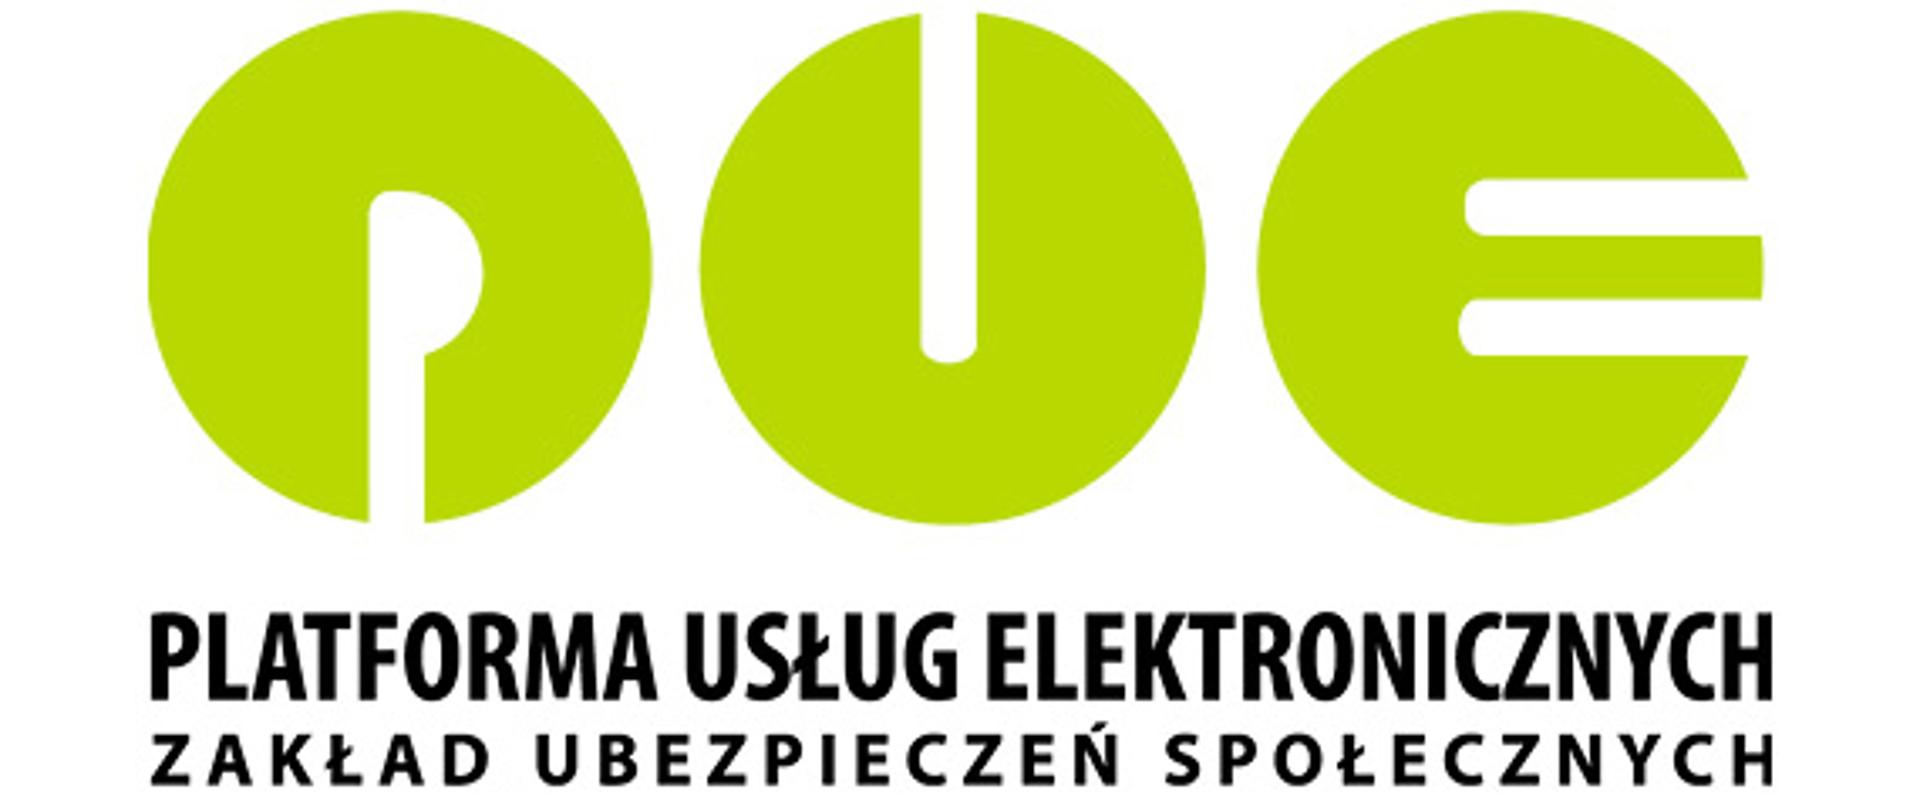 Logo oraz napis "Platforma usług elektronicznych - zakład ubezpieczeń społecznych"